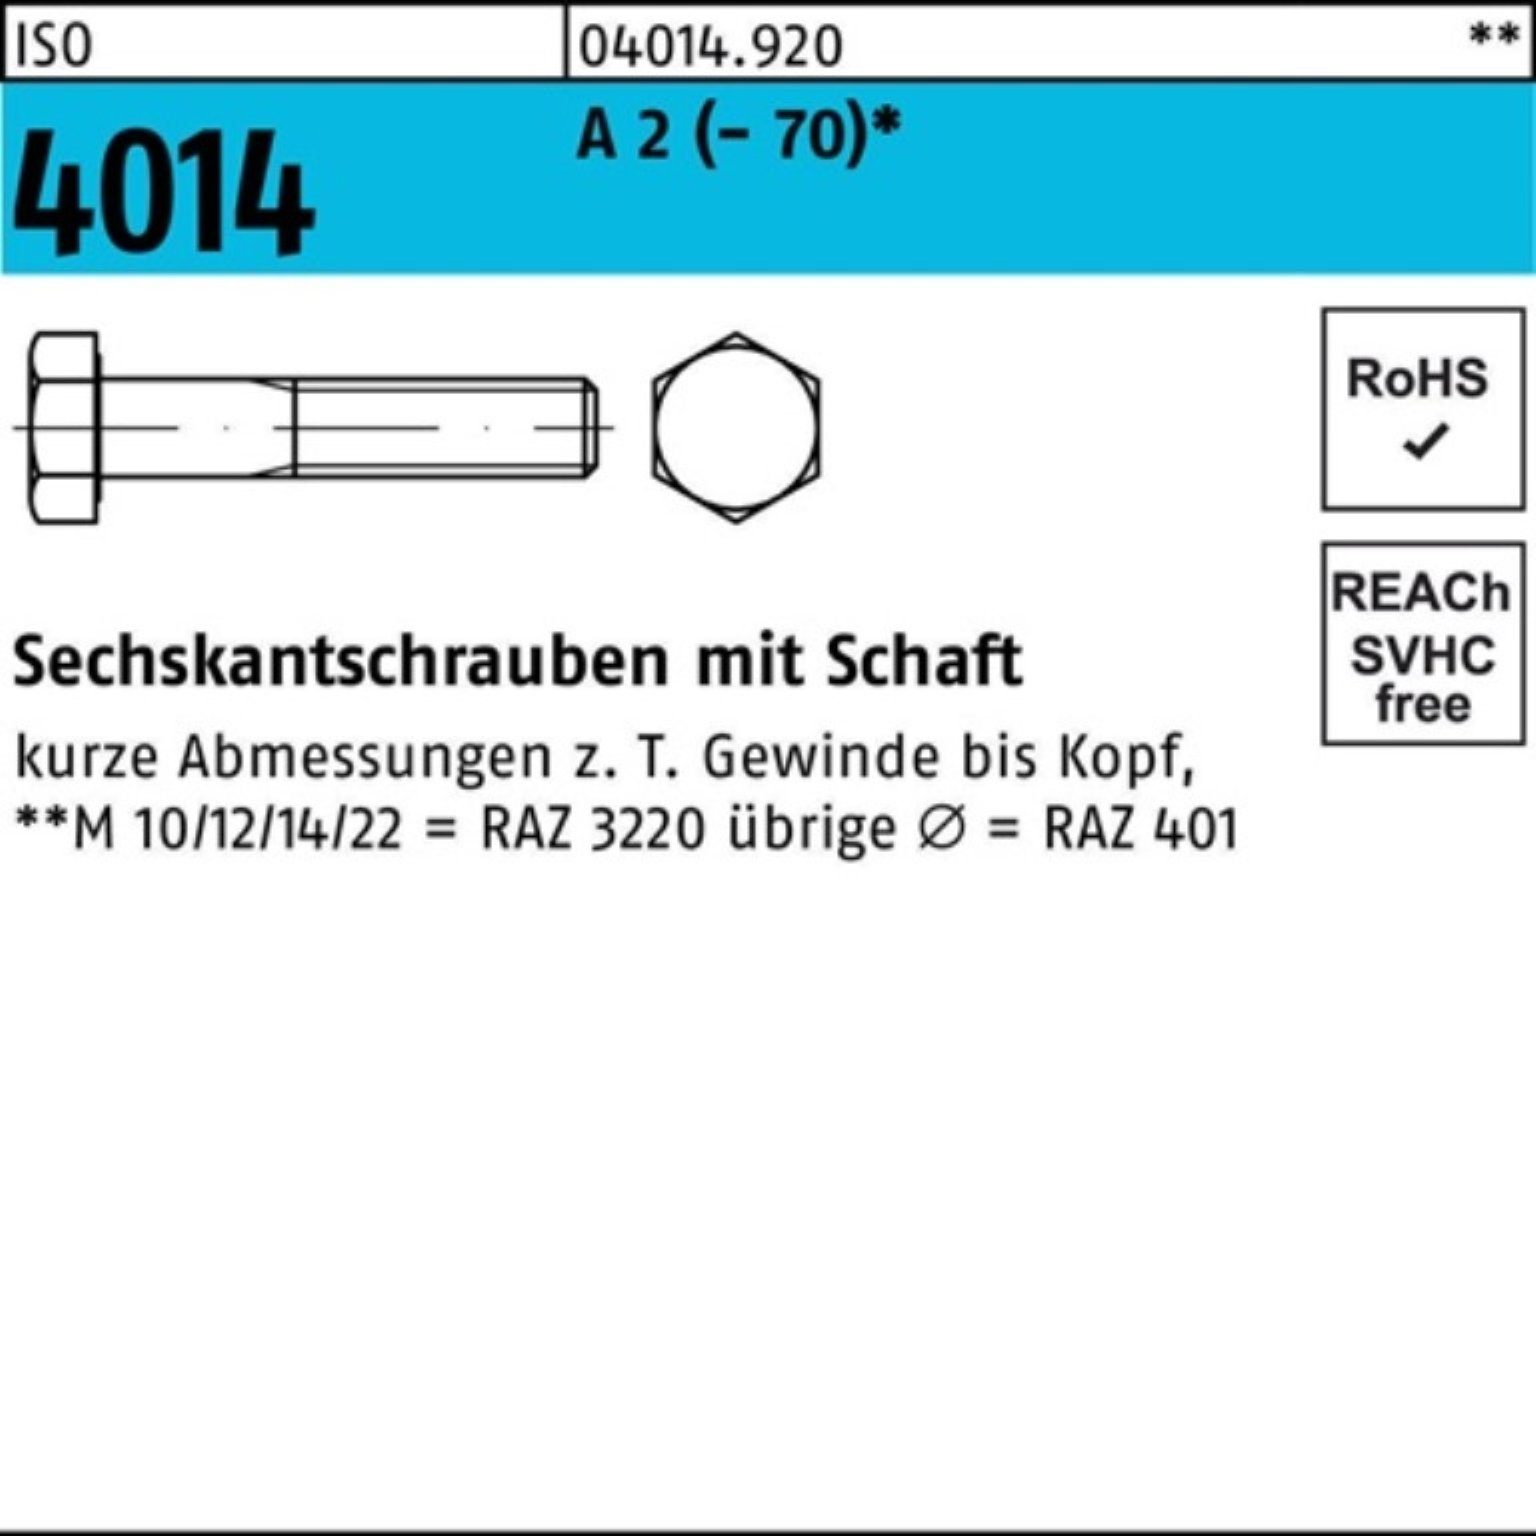 Bufab Sechskantschraube 100er Pack Sechskantschraube ISO 4014 Schaft M8x 40 A 2 (70) 100 St